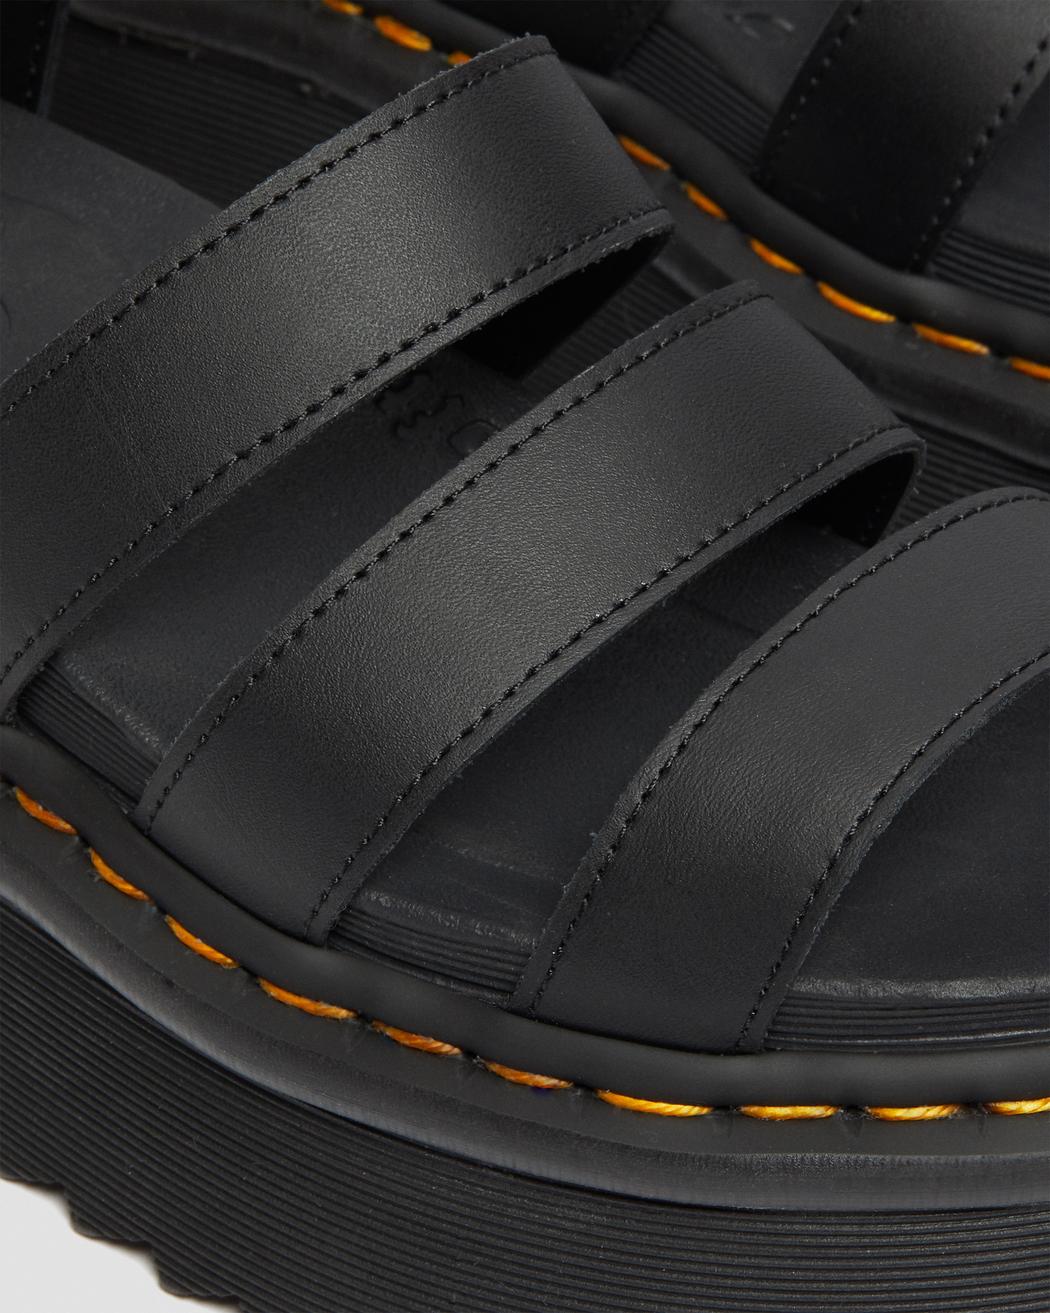 Dr. Martens Blaire Quad Hydro Leather Sandals 27296001